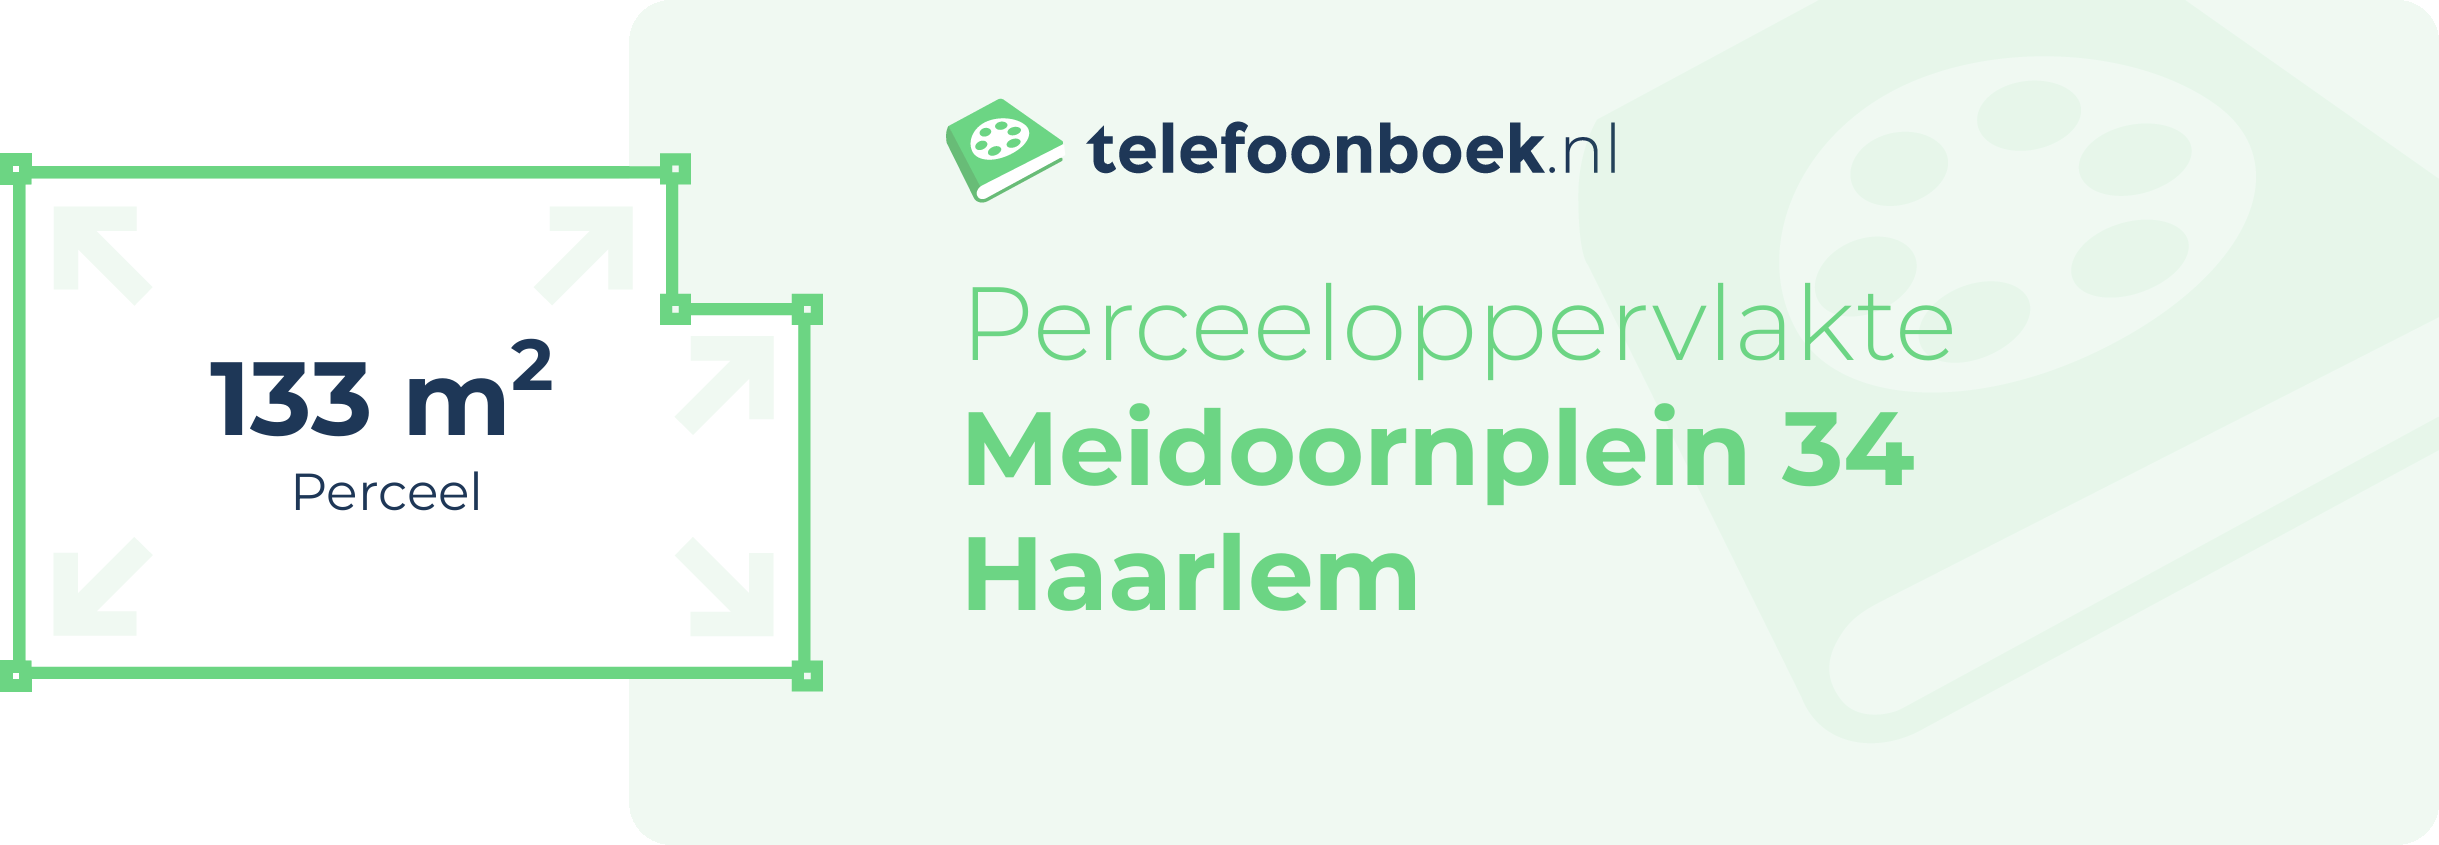 Perceeloppervlakte Meidoornplein 34 Haarlem